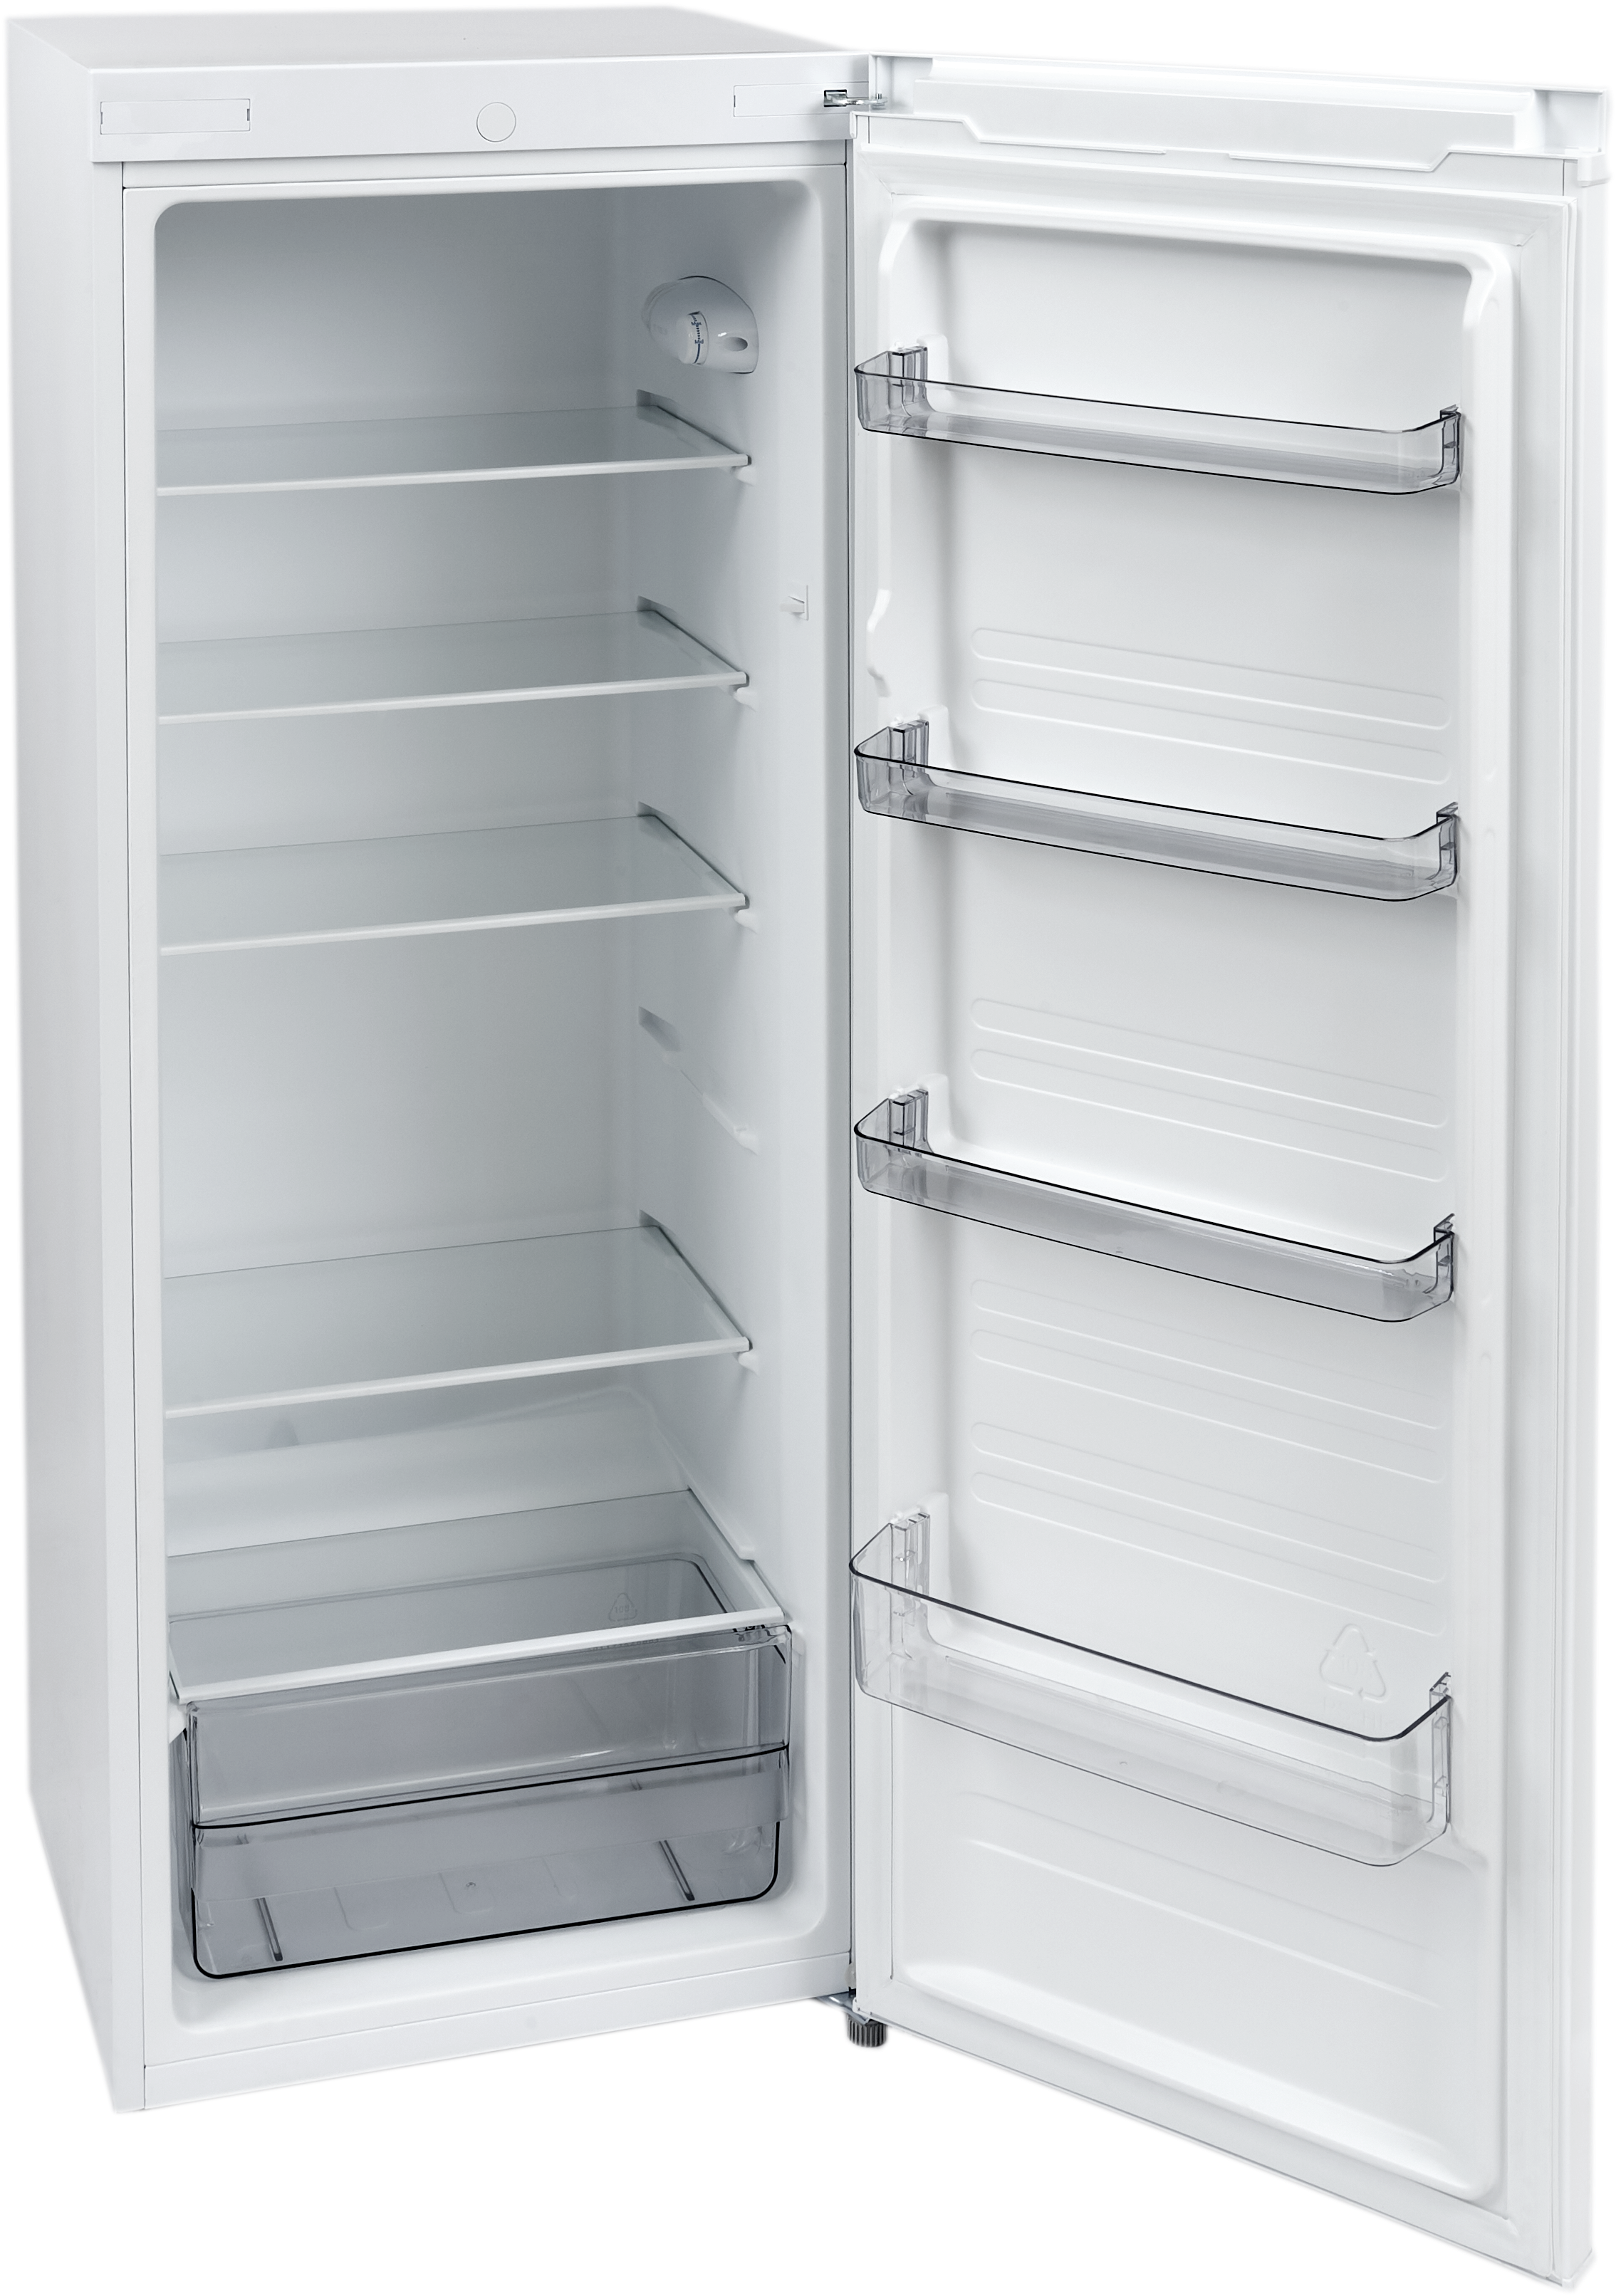 A White Refrigerator With Shelves